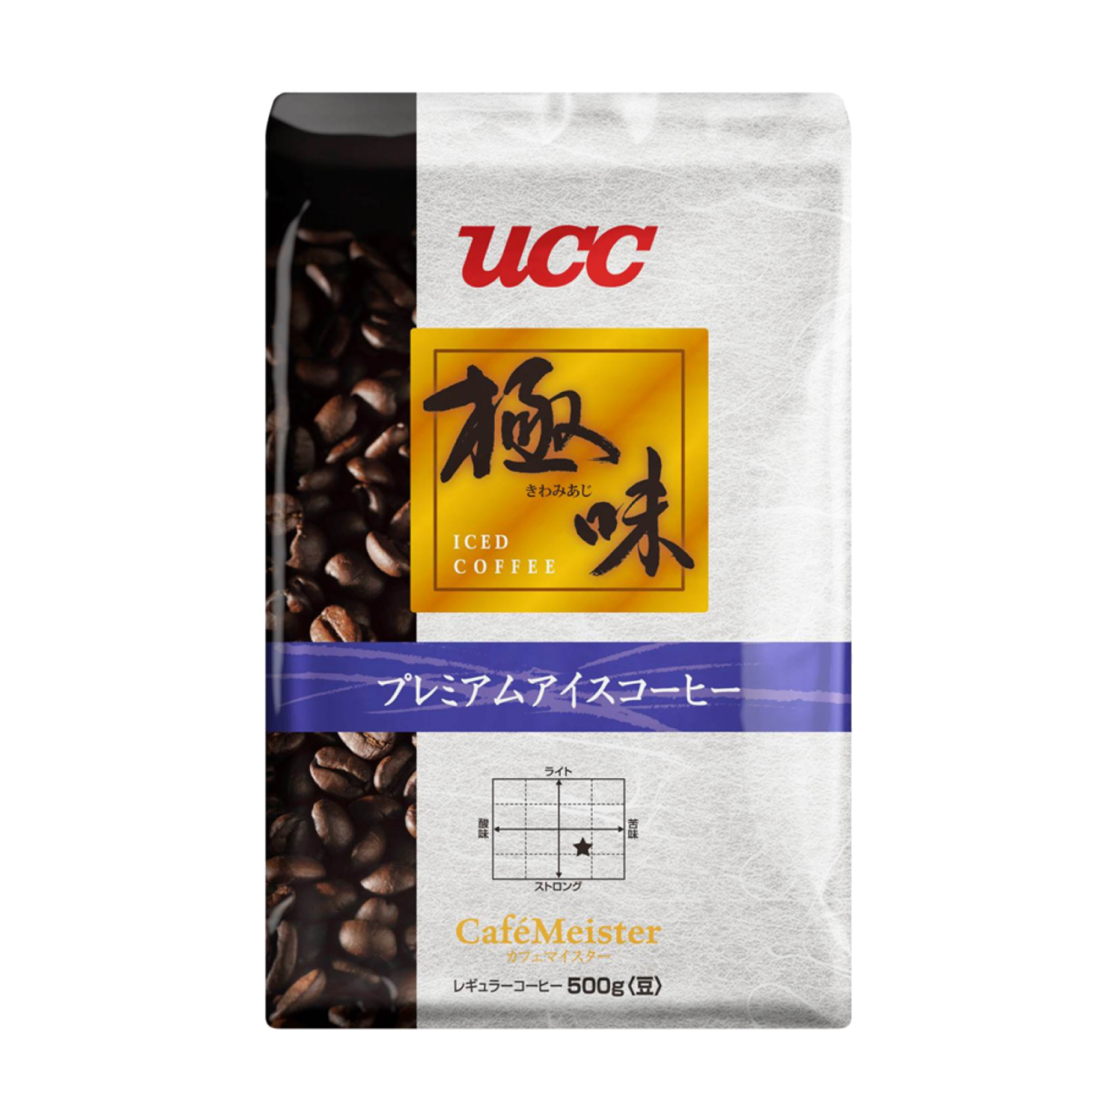 極味 | 業務用コーヒー | UCCコーヒープロフェッショナル株式会社